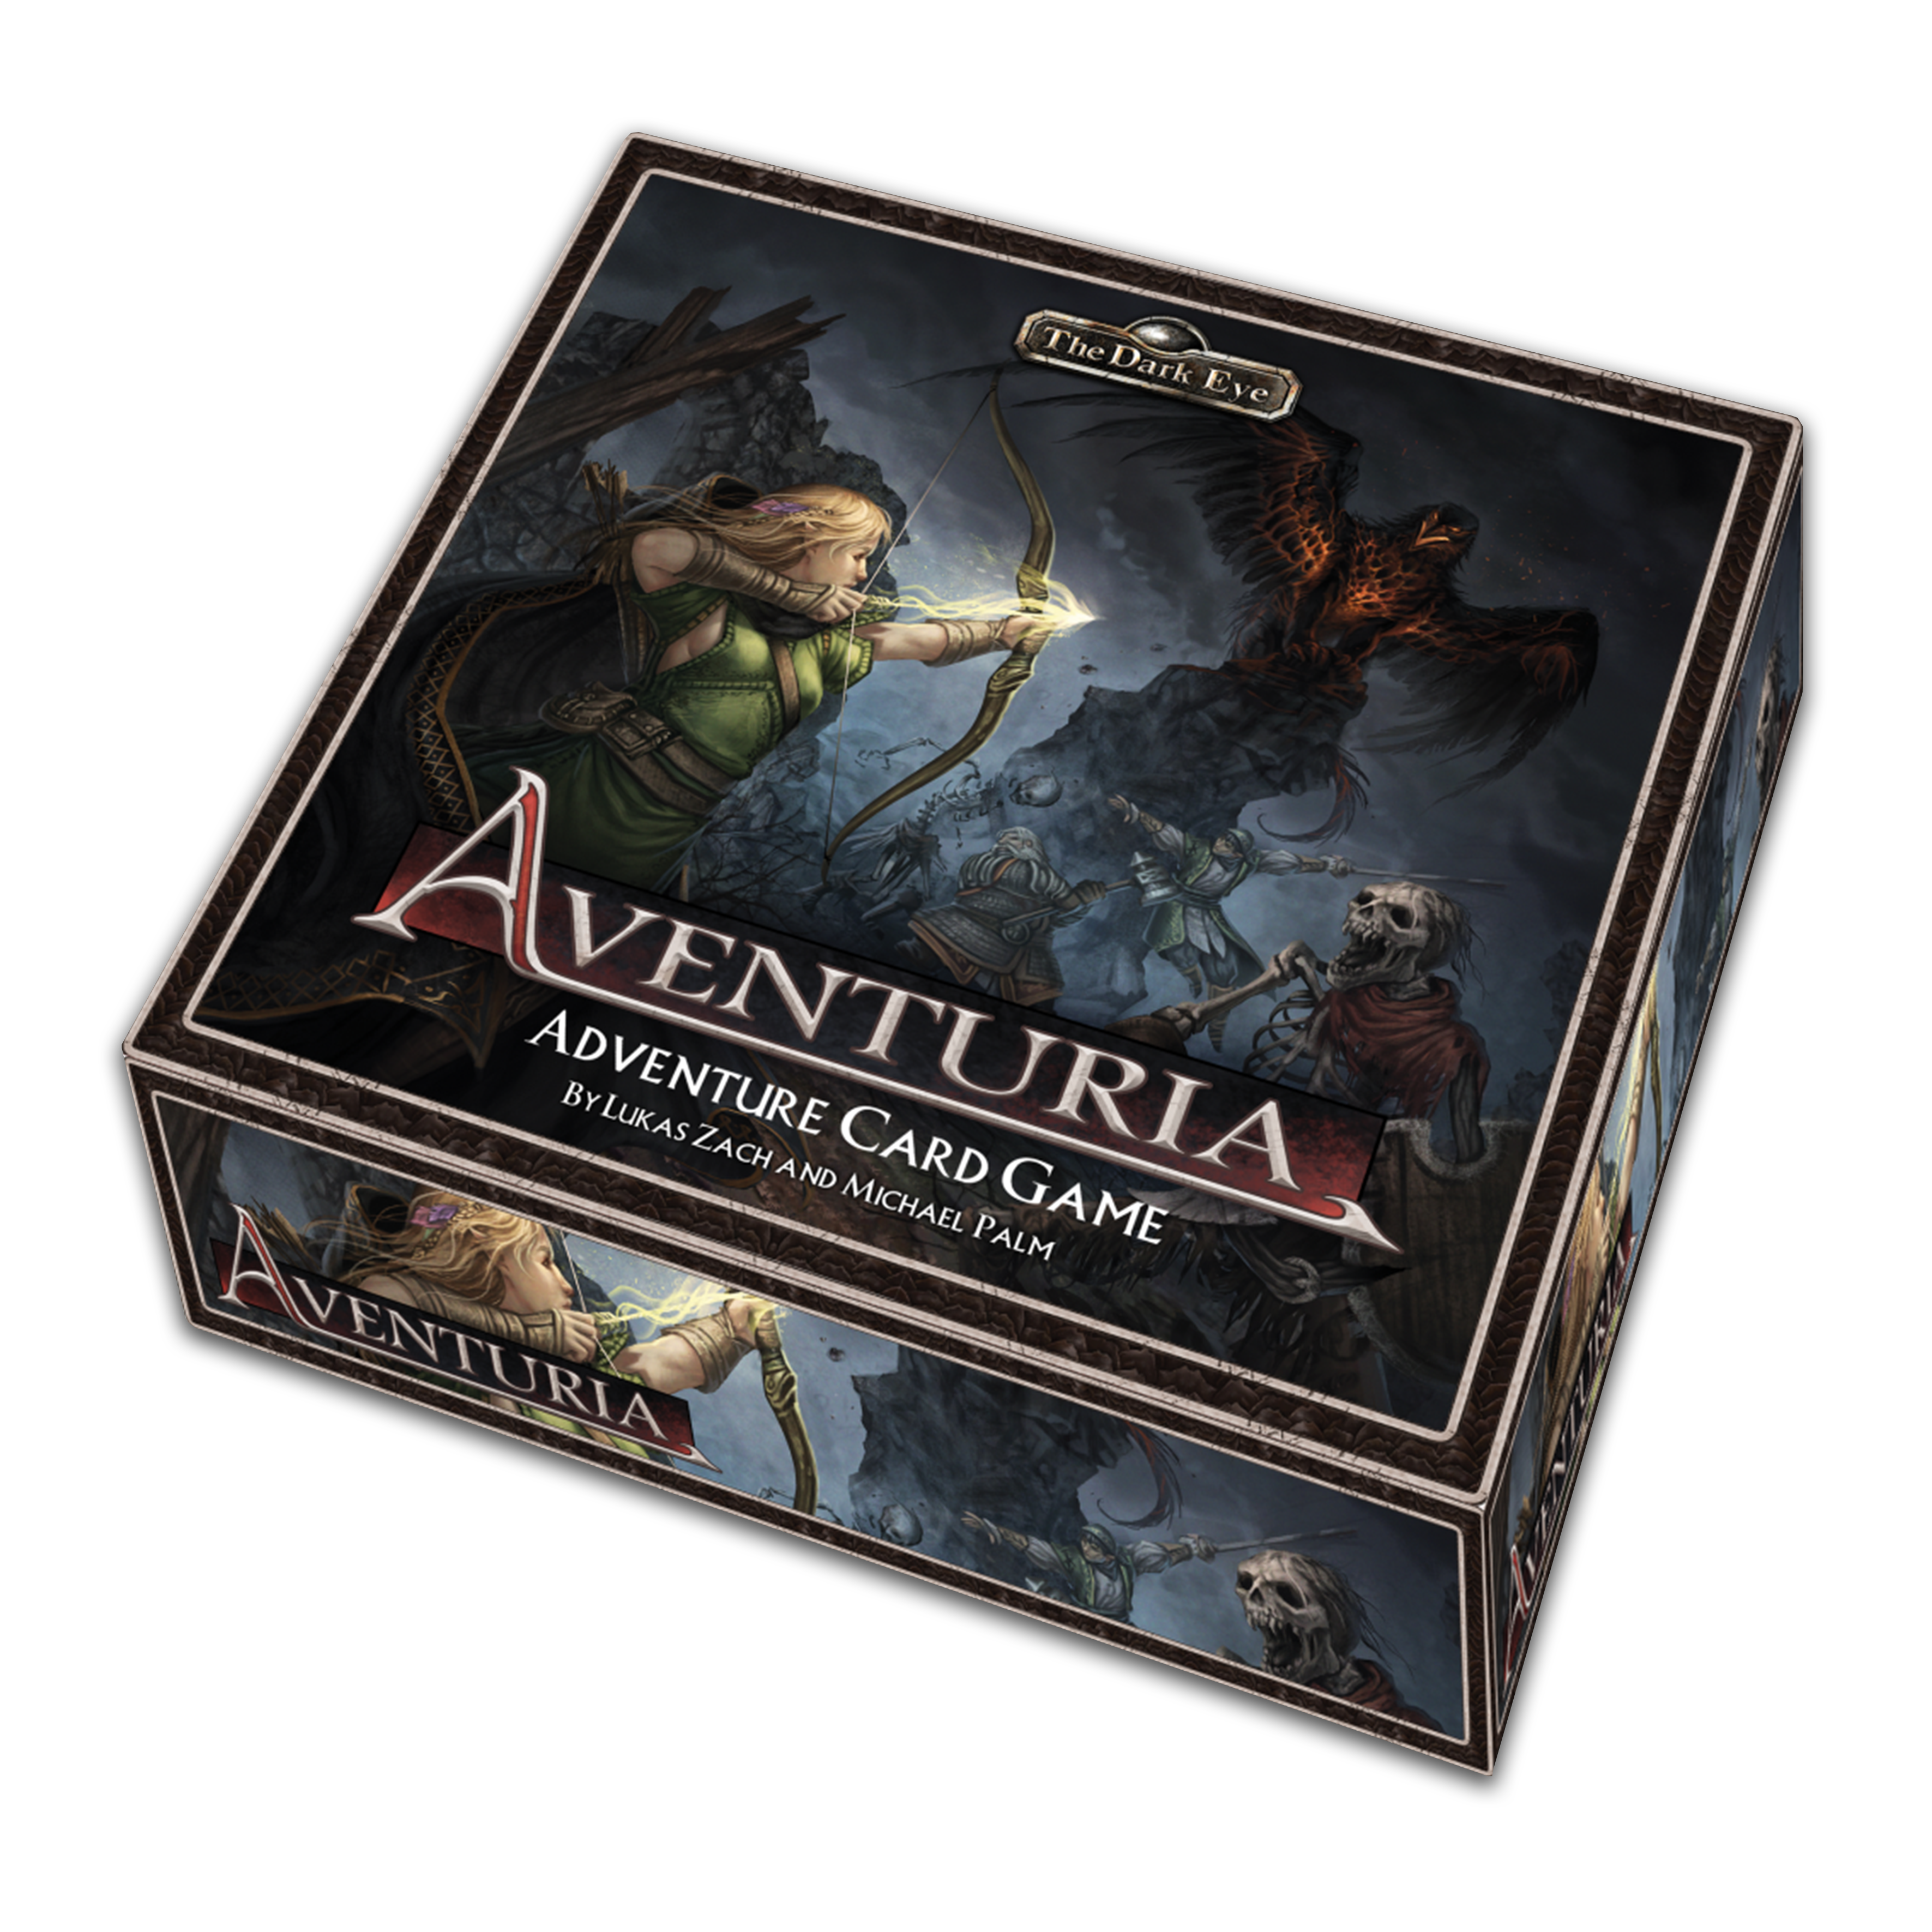 Aventuria - Adventure Card Game